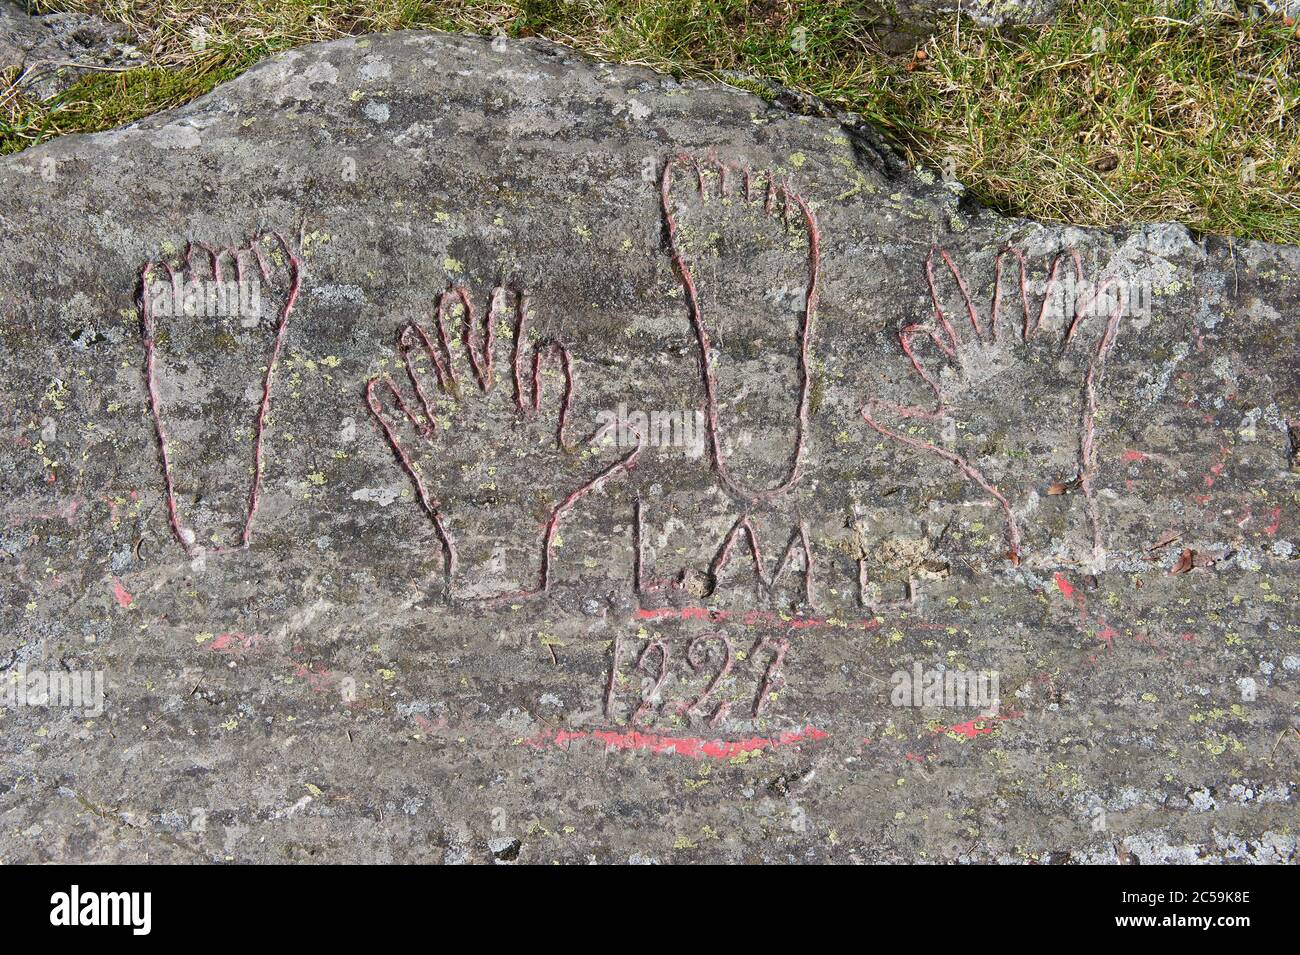 Schweiz, Wallis, Trienttal, les Marécottes, Louis des SIX doigts (14. Dezember 1881 27. Februar 1969): Dieser Postbote, der zwischen Finhaut und Vernayaz arbeitete, hatte die Besonderheit, sechs Finger an Händen und Füßen zu haben.Er ließ die Graffiti seiner Hände und Füße auf einem Stein, der entlang des Weges liegt, der von der Gemeinde als Wanderweg bezeichnet wird Stockfoto